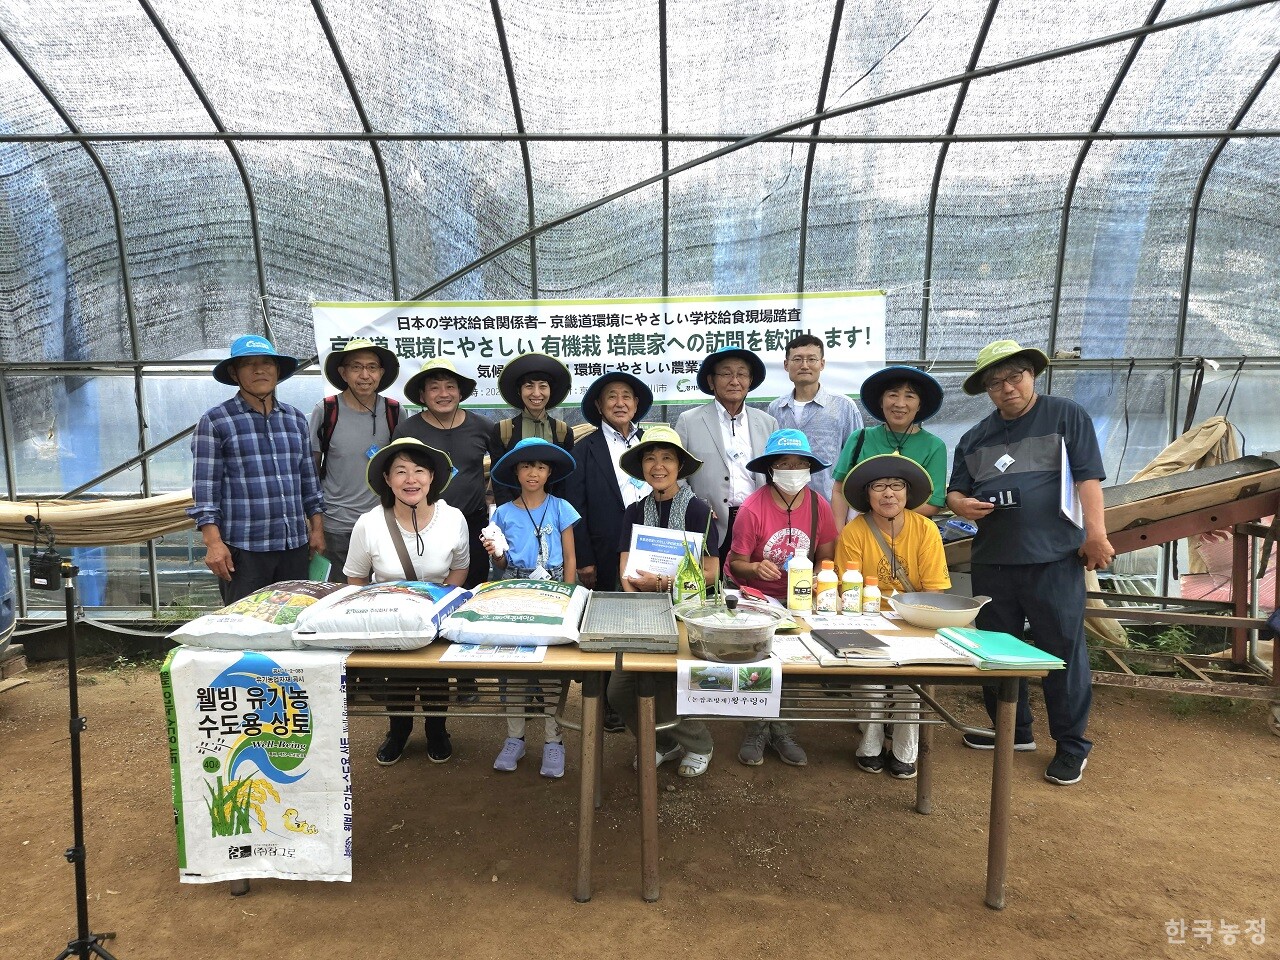 일본 학교급식 관계자 10여명이 지난달 23일 경기도 친환경 학교급식 유기농 쌀을 생산하는 여주시 김준식씨 농가를 방문했다.